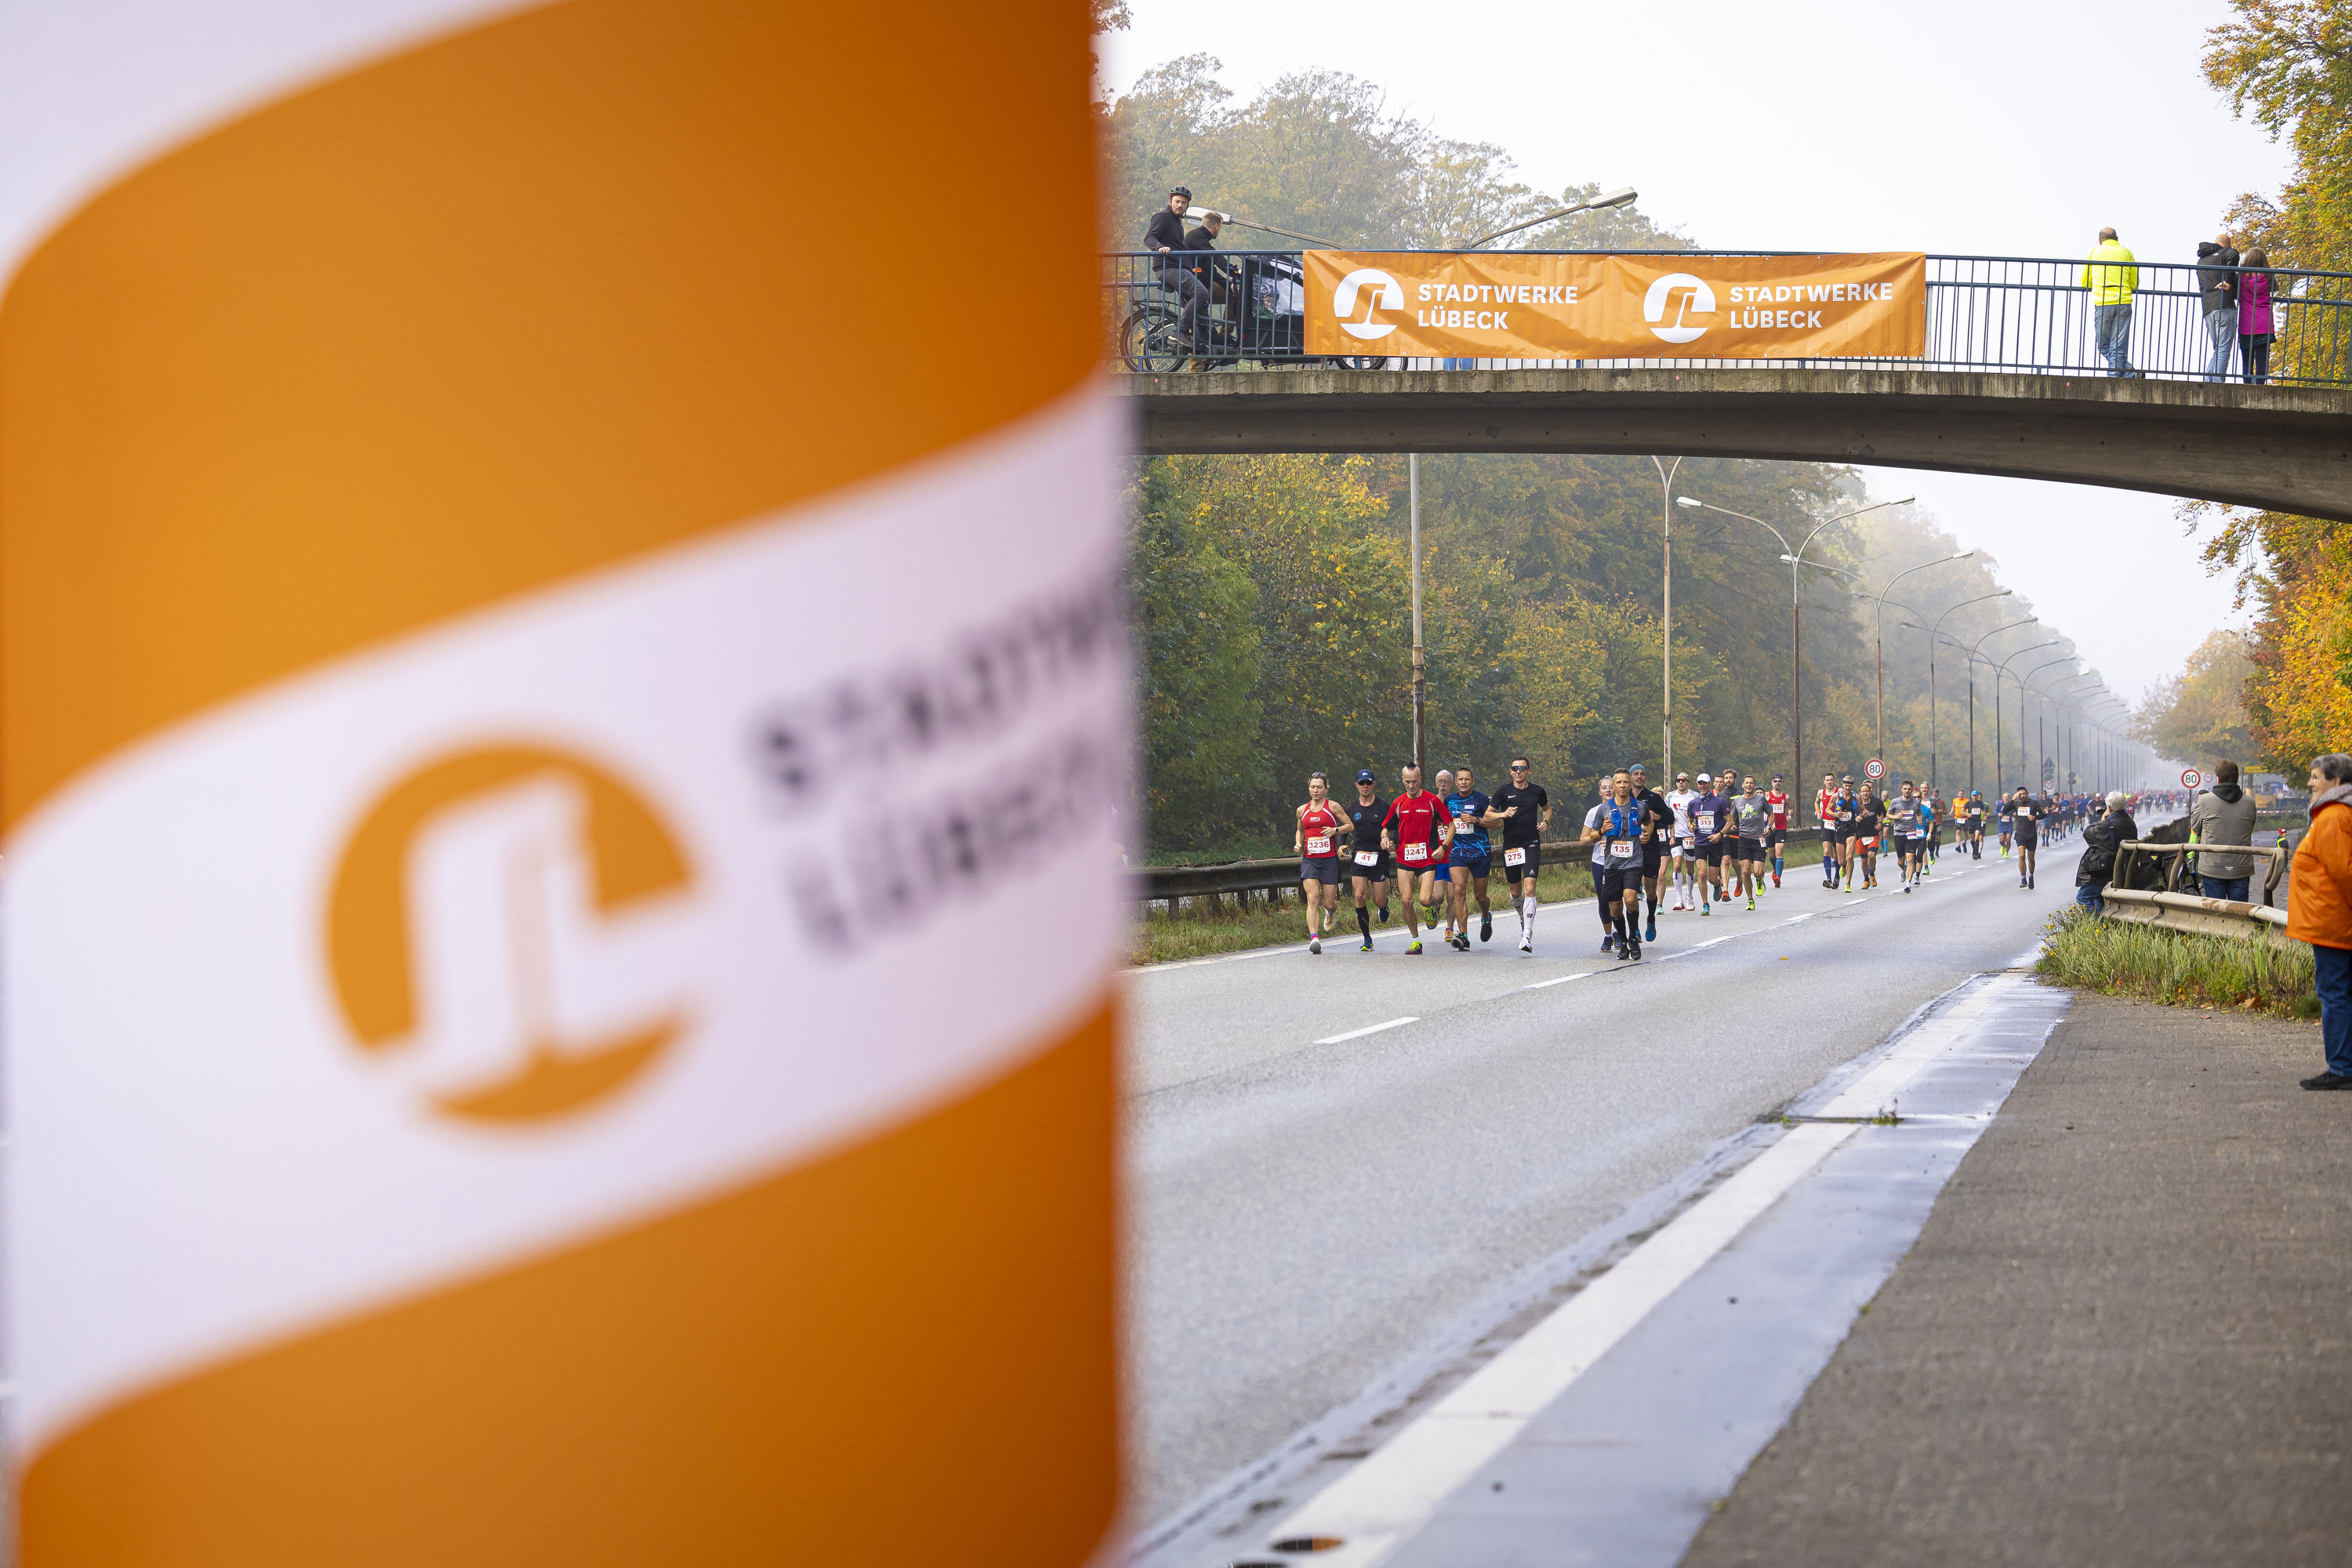 Foto von der Strecke des Stadtwerke Lübeck Marathon